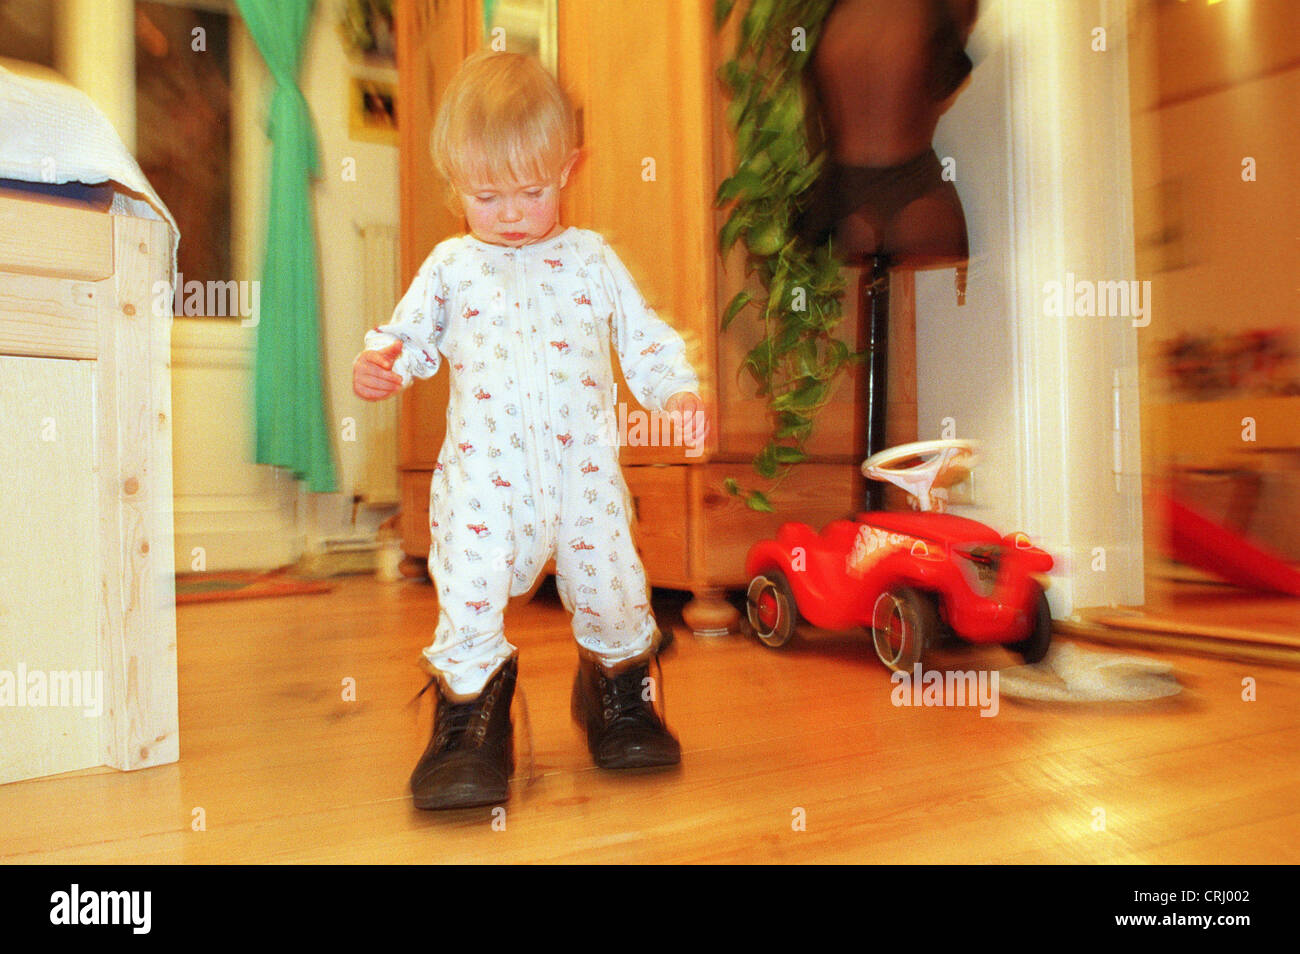 Enfant jouant avec Daddy's shoes Banque D'Images